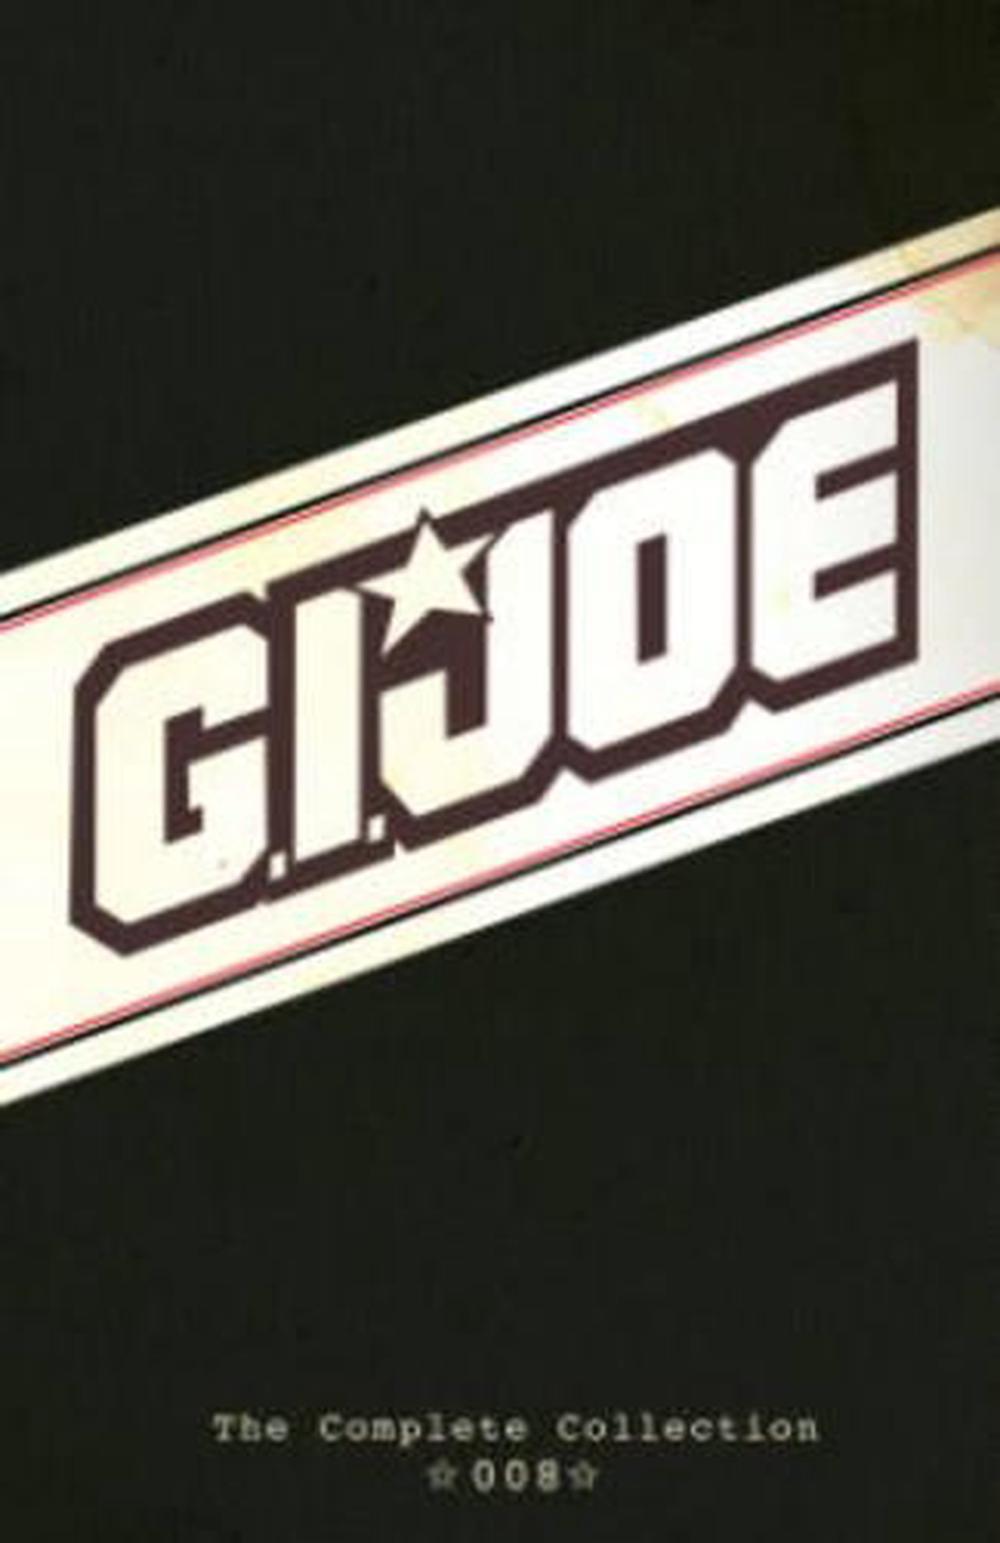 G.I. Joe by Larry Hama